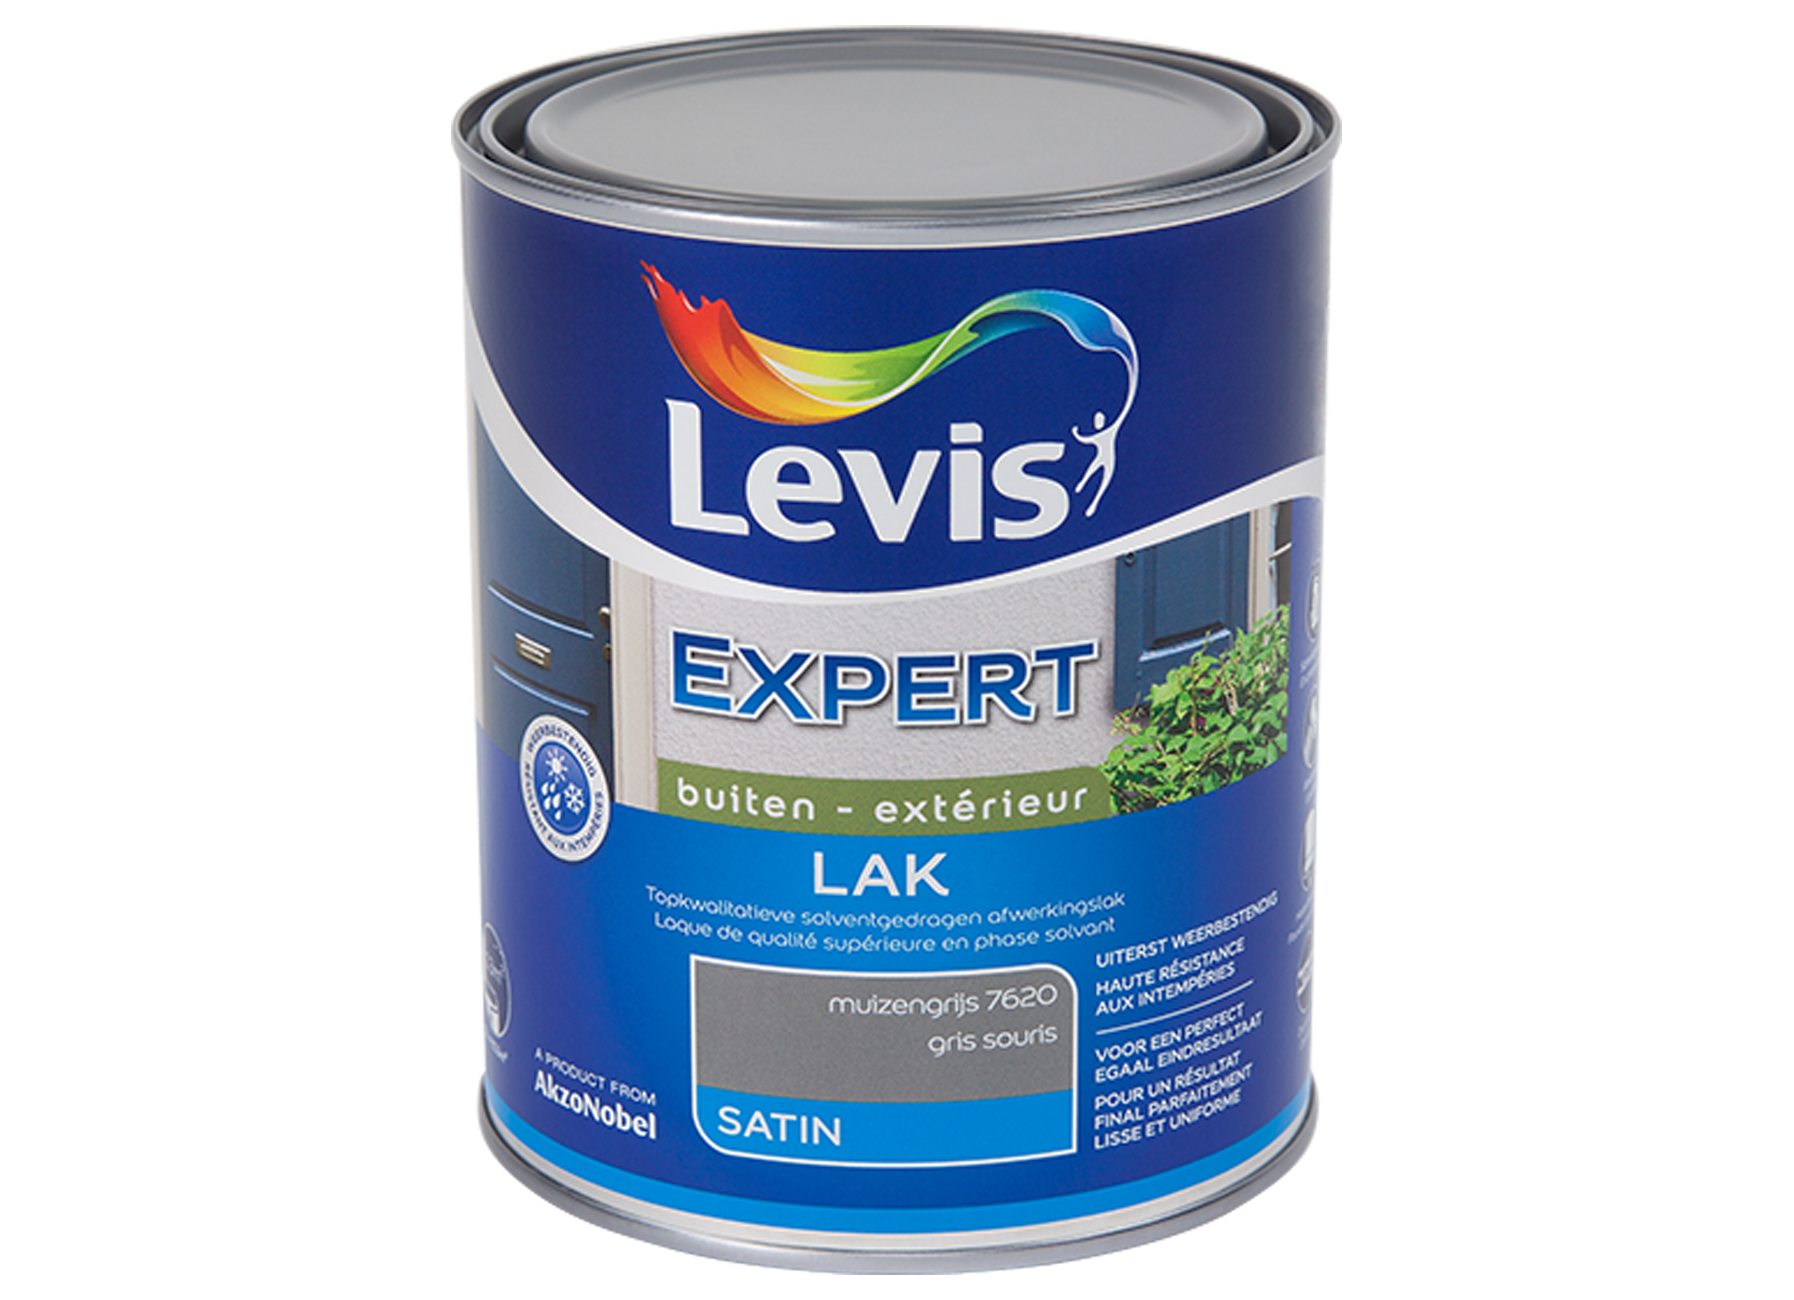 LAK EXPERT EXTERIEUR SATIN - GRIS SOURIS 7620 1L